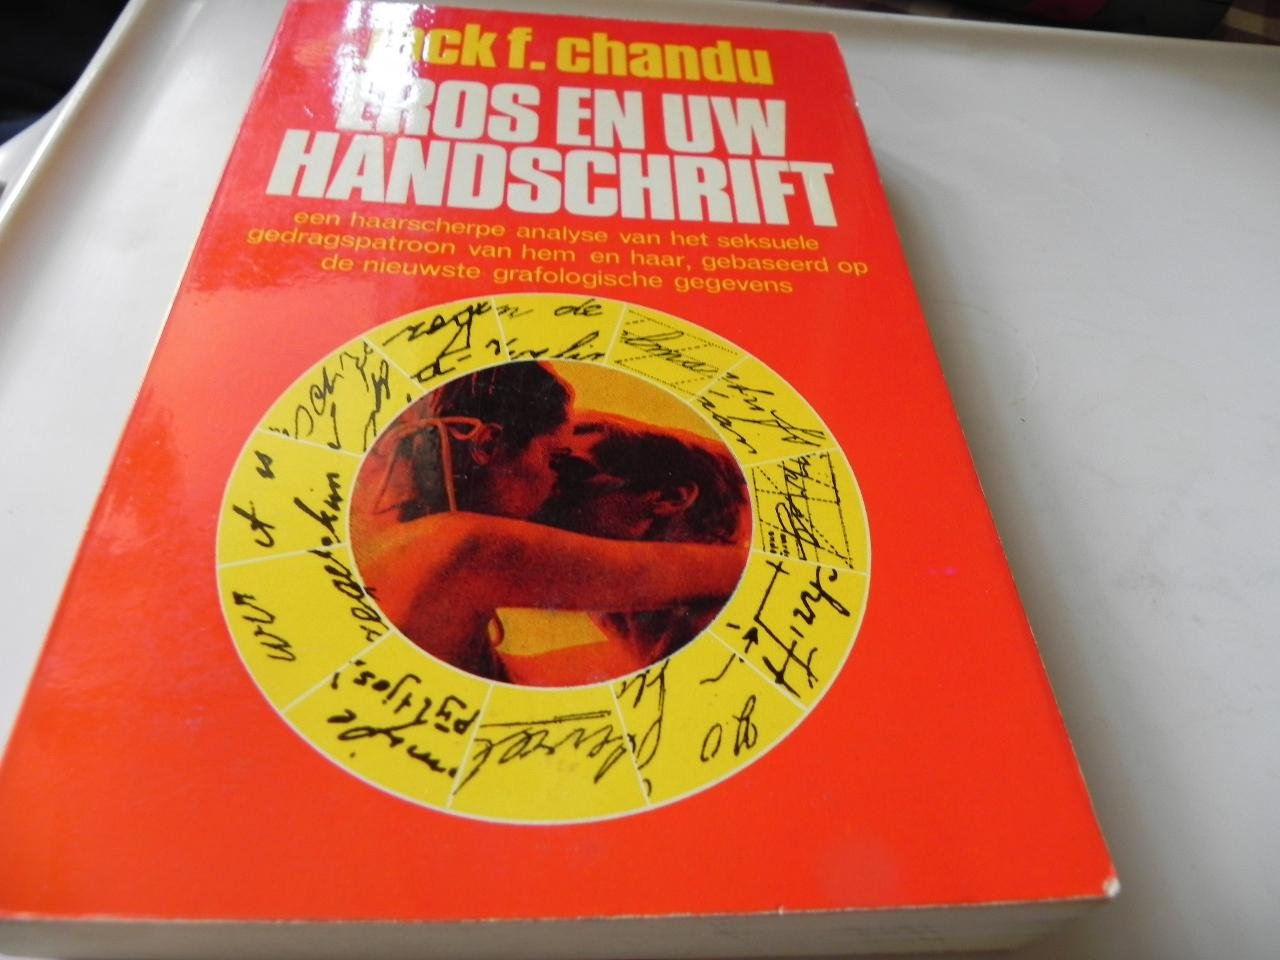 Chandu, J.F. - Eros en uw handschrift / druk 1